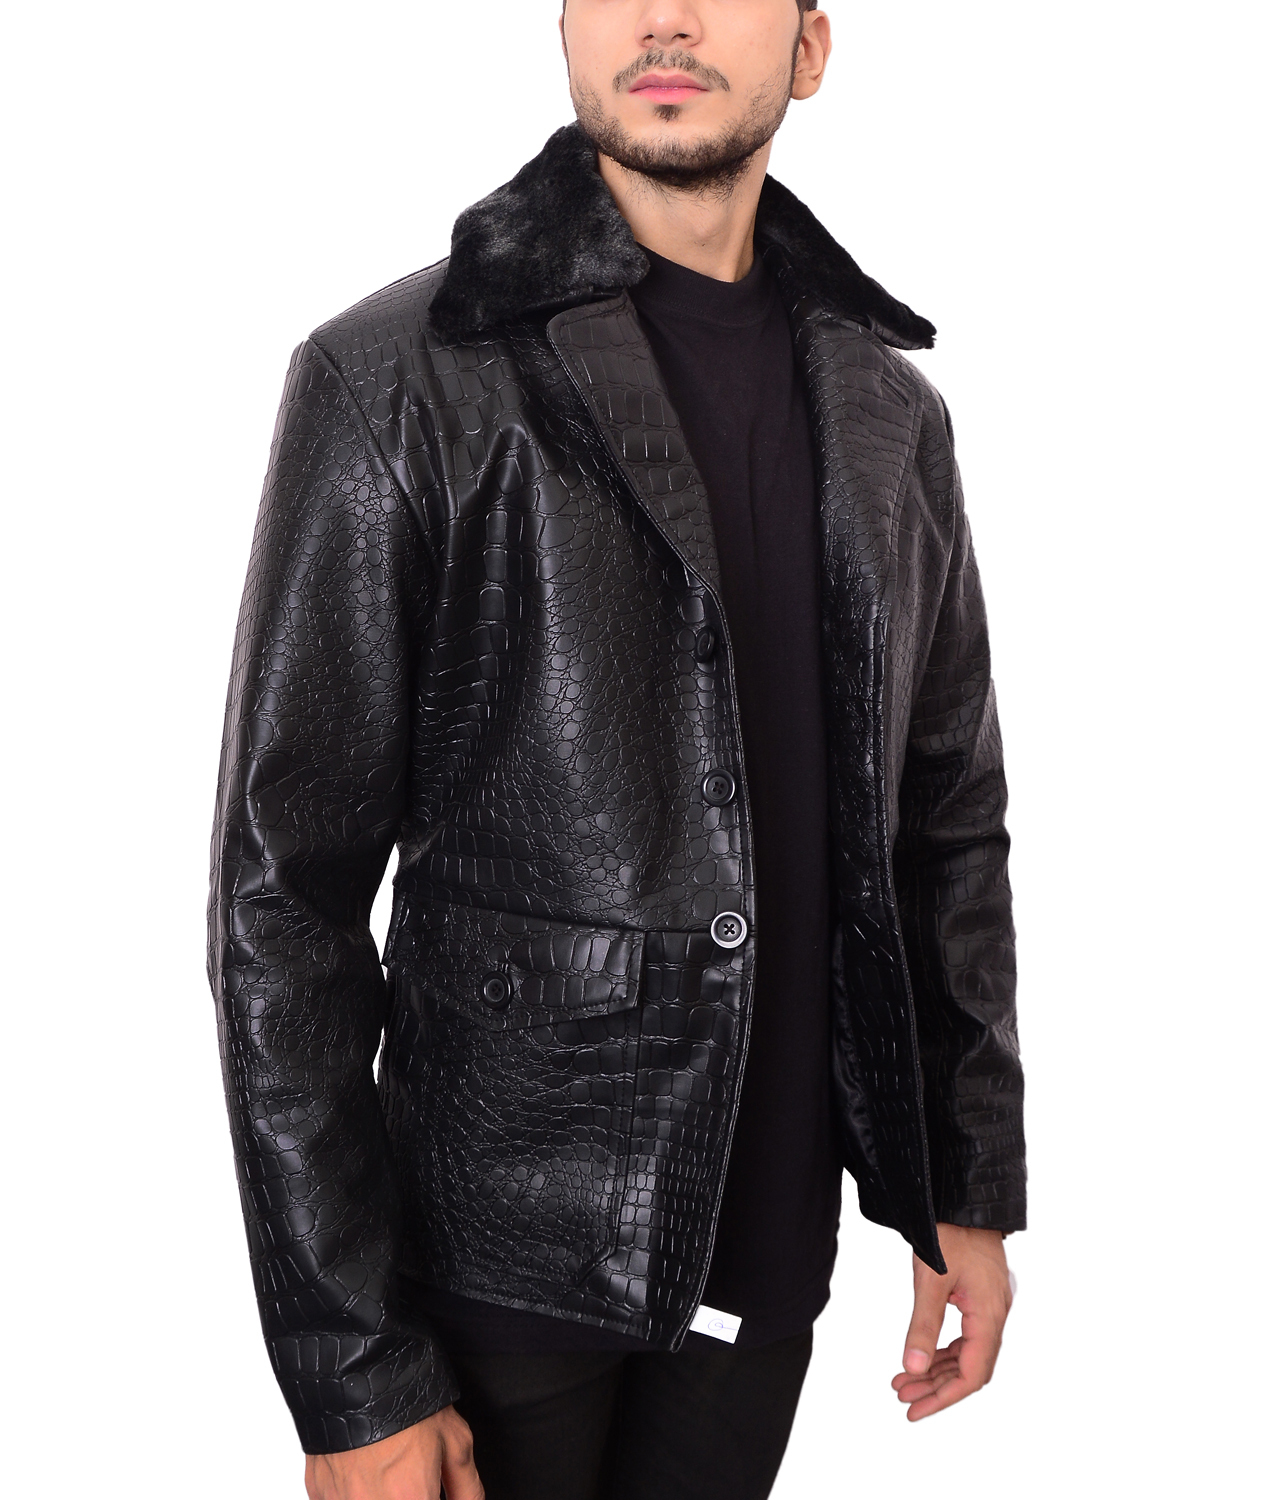 Mafia 2 Embossed Biker Crocodile Pattern Leather Jacket - Outerwear